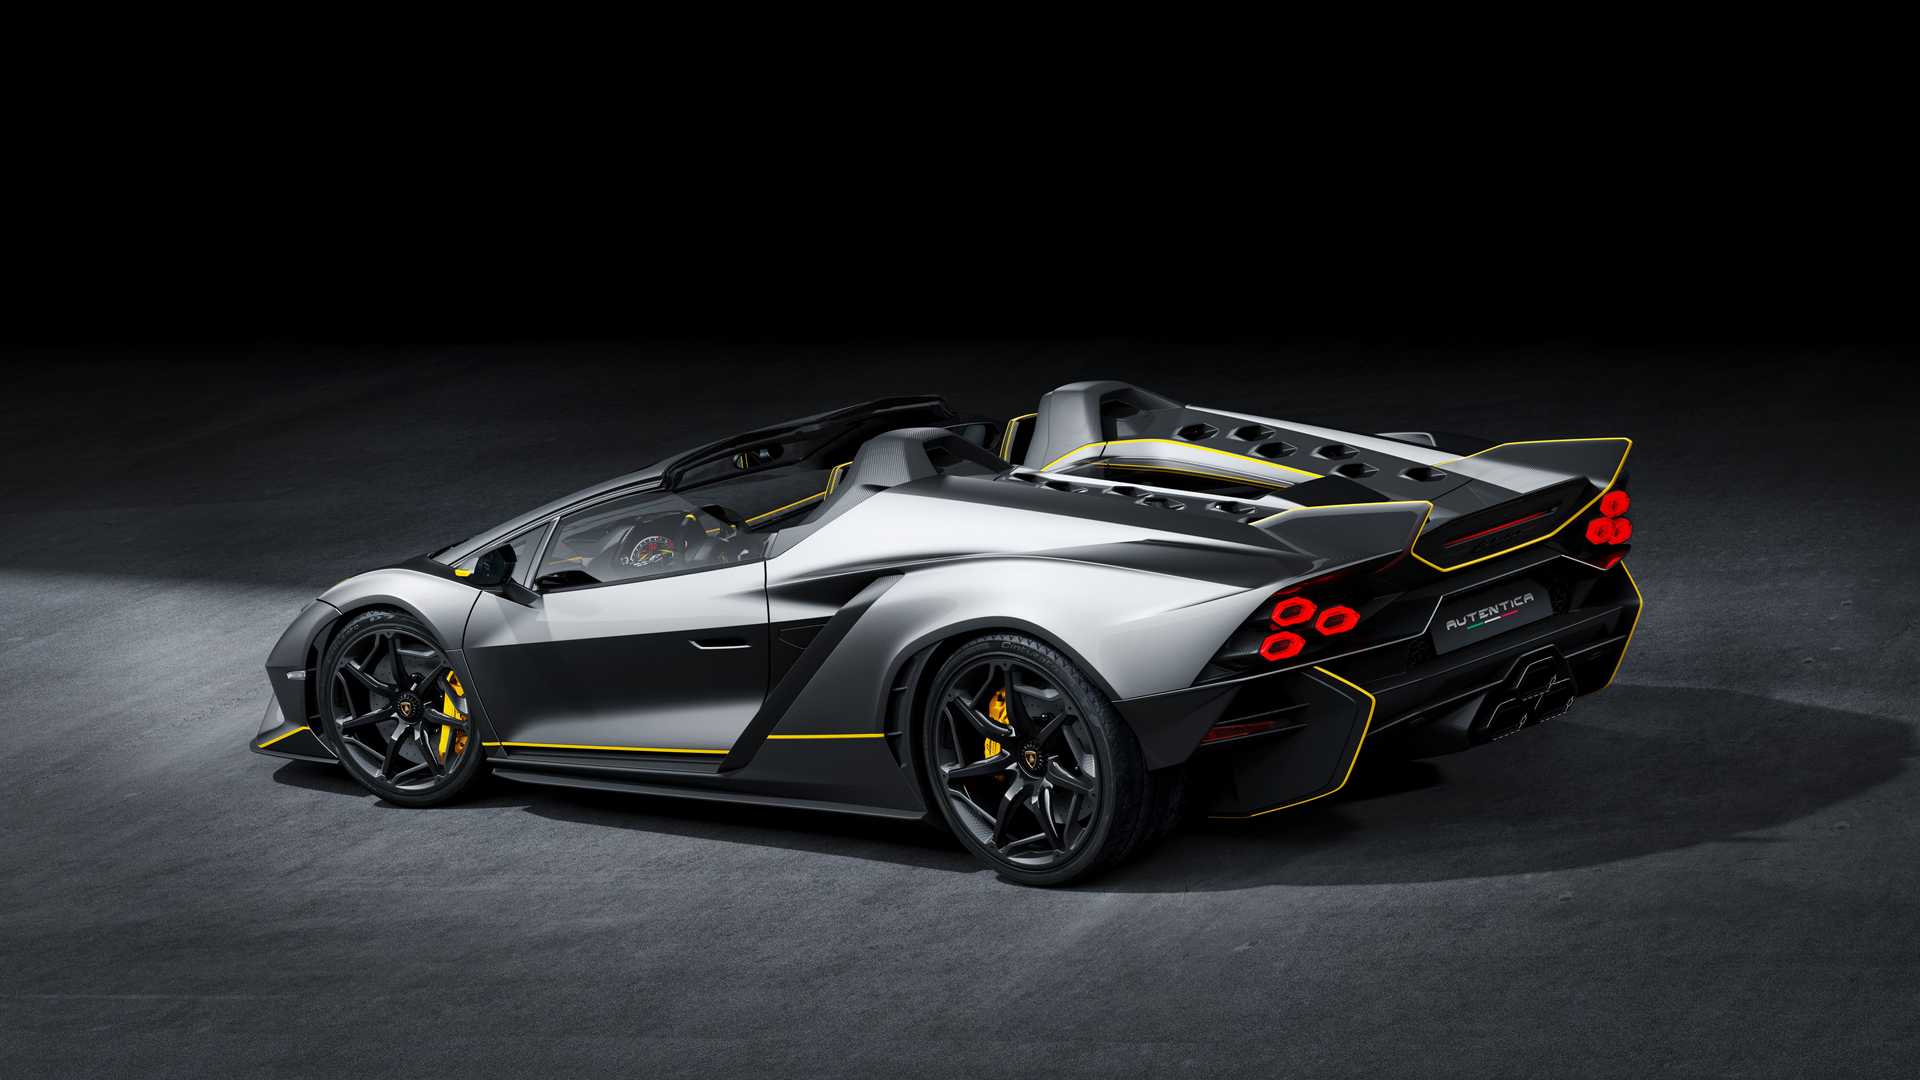 Lamborghini ra mắt bộ đôi siêu xe V12 chạy xăng cuối cùng, sau đây sẽ toàn siêu xe điện êm ru chưa biết nẹt pô kiểu gì - ảnh 16